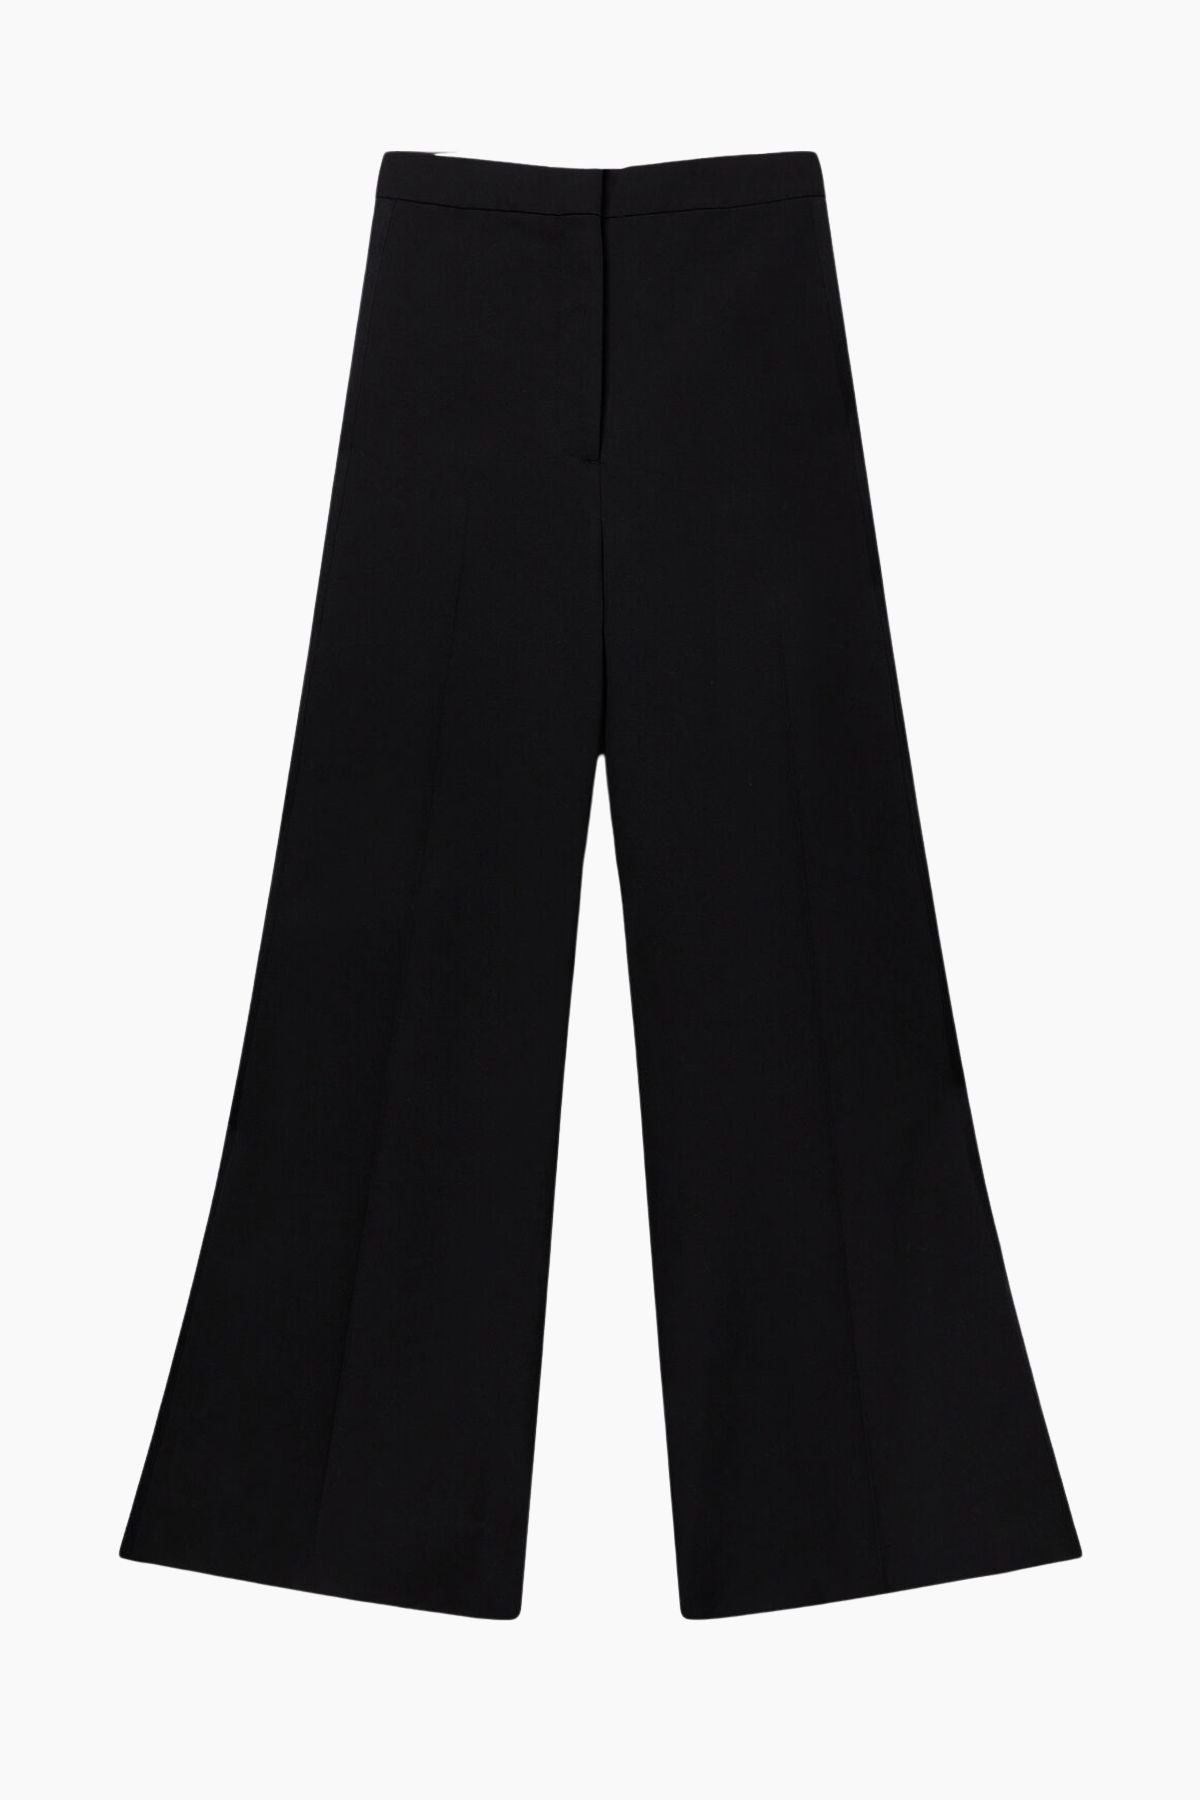 Stella McCartney Wool Tuxedo Trousers - Black